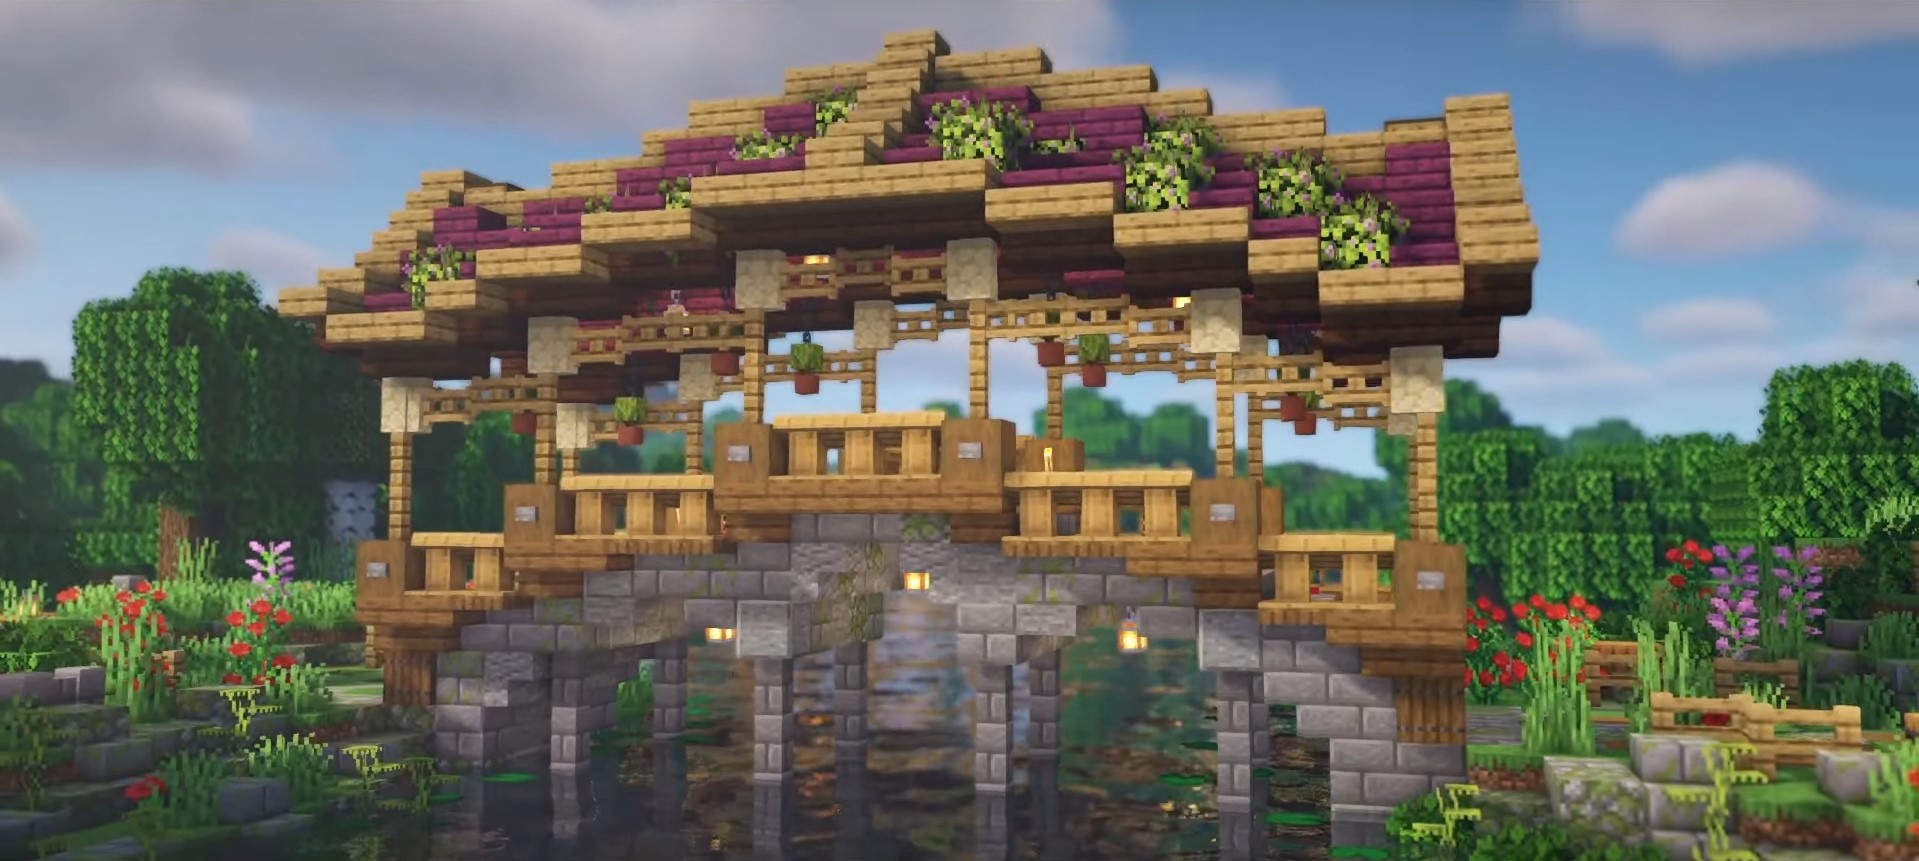 Fantasy Bridge minecraft building idea